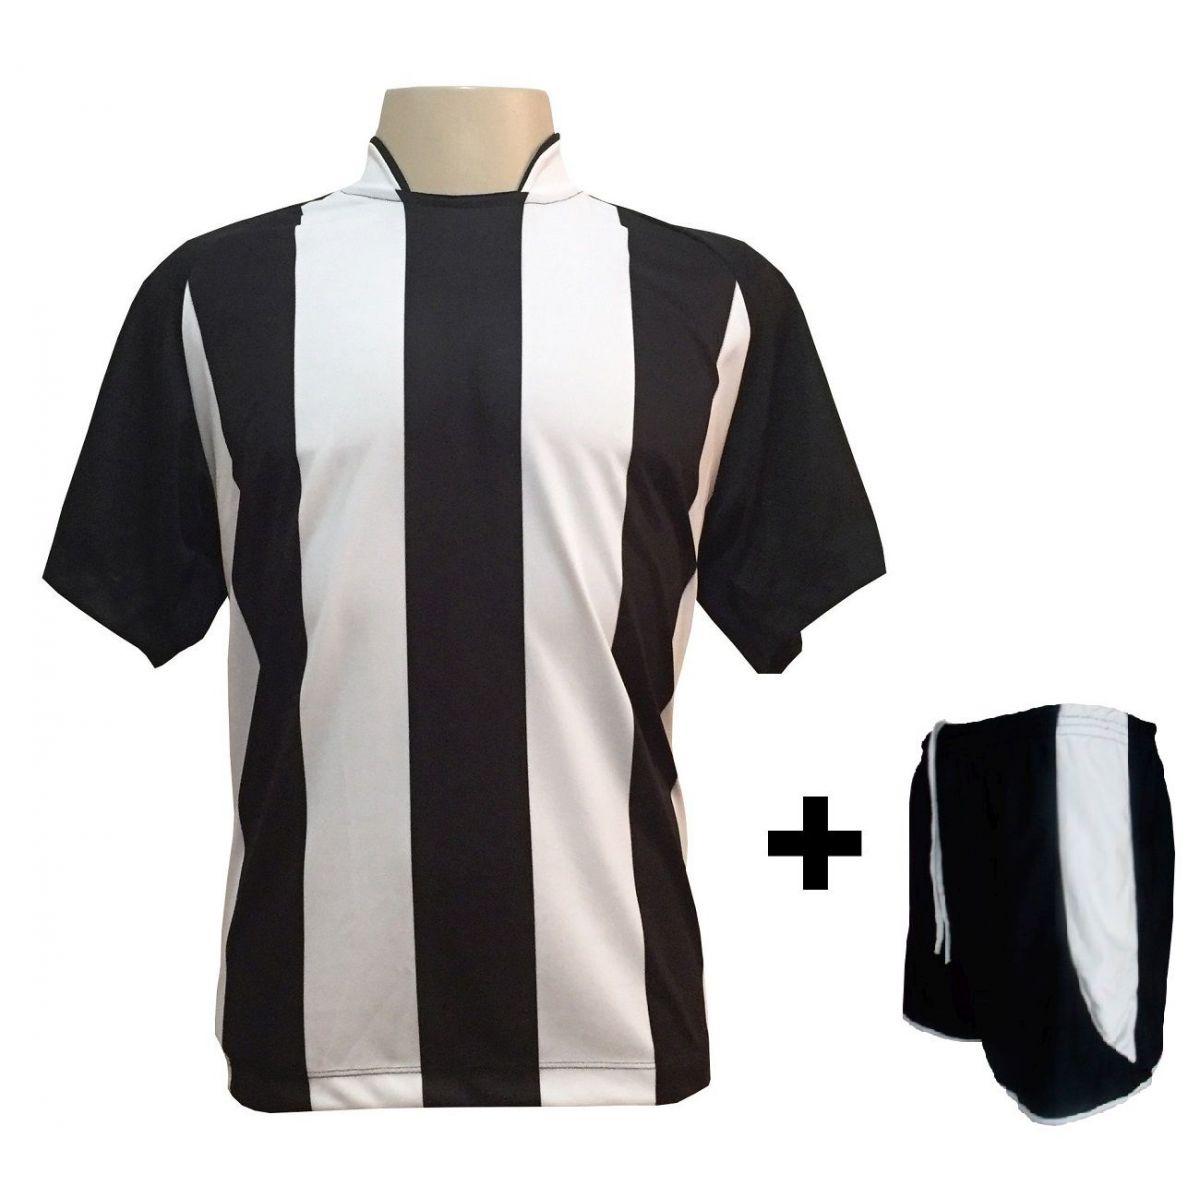 Uniforme Esportivo com 12 camisas modelo Milan Preto/Branco + 12 calções modelo Copa Preto/Branco + Brindes